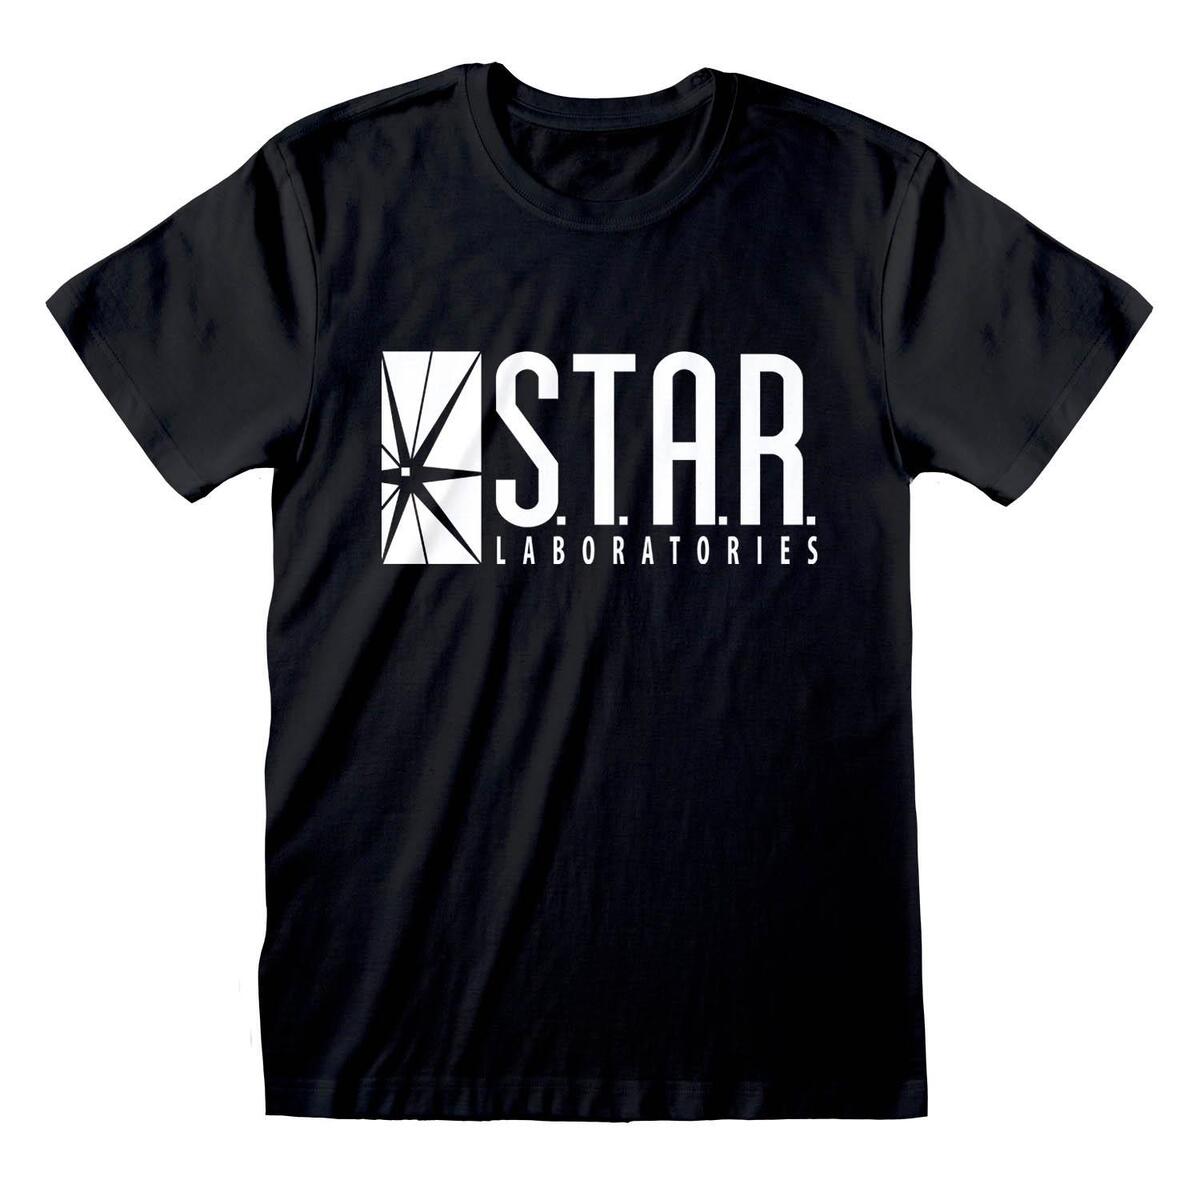 (ザ・フラッシュ) The Flash オフィシャル商品 メンズ Star Labs 半袖 Tシャツ トップス 【海外通販】